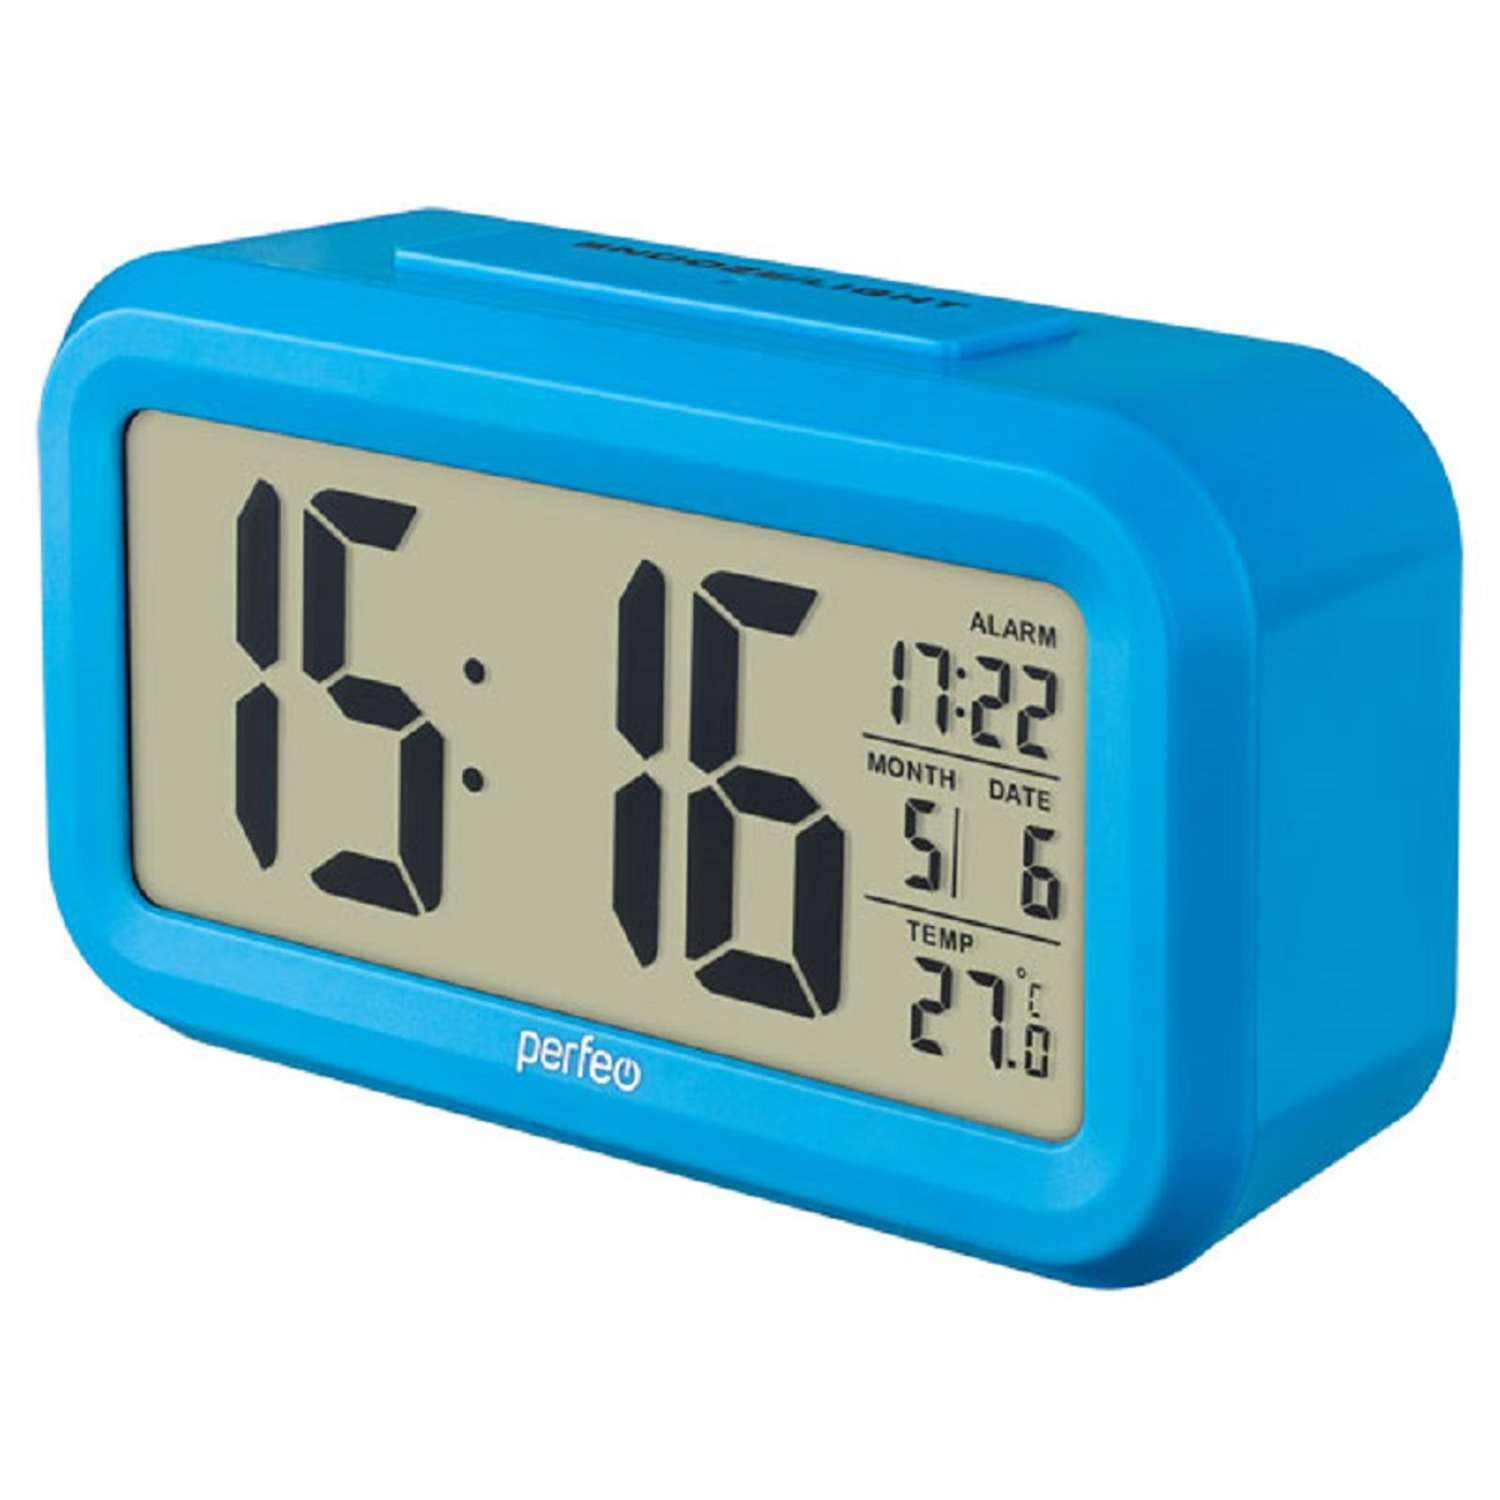 Часы-будильник Perfeo Snuz синий PF-S2166 время температура дата - фото 1